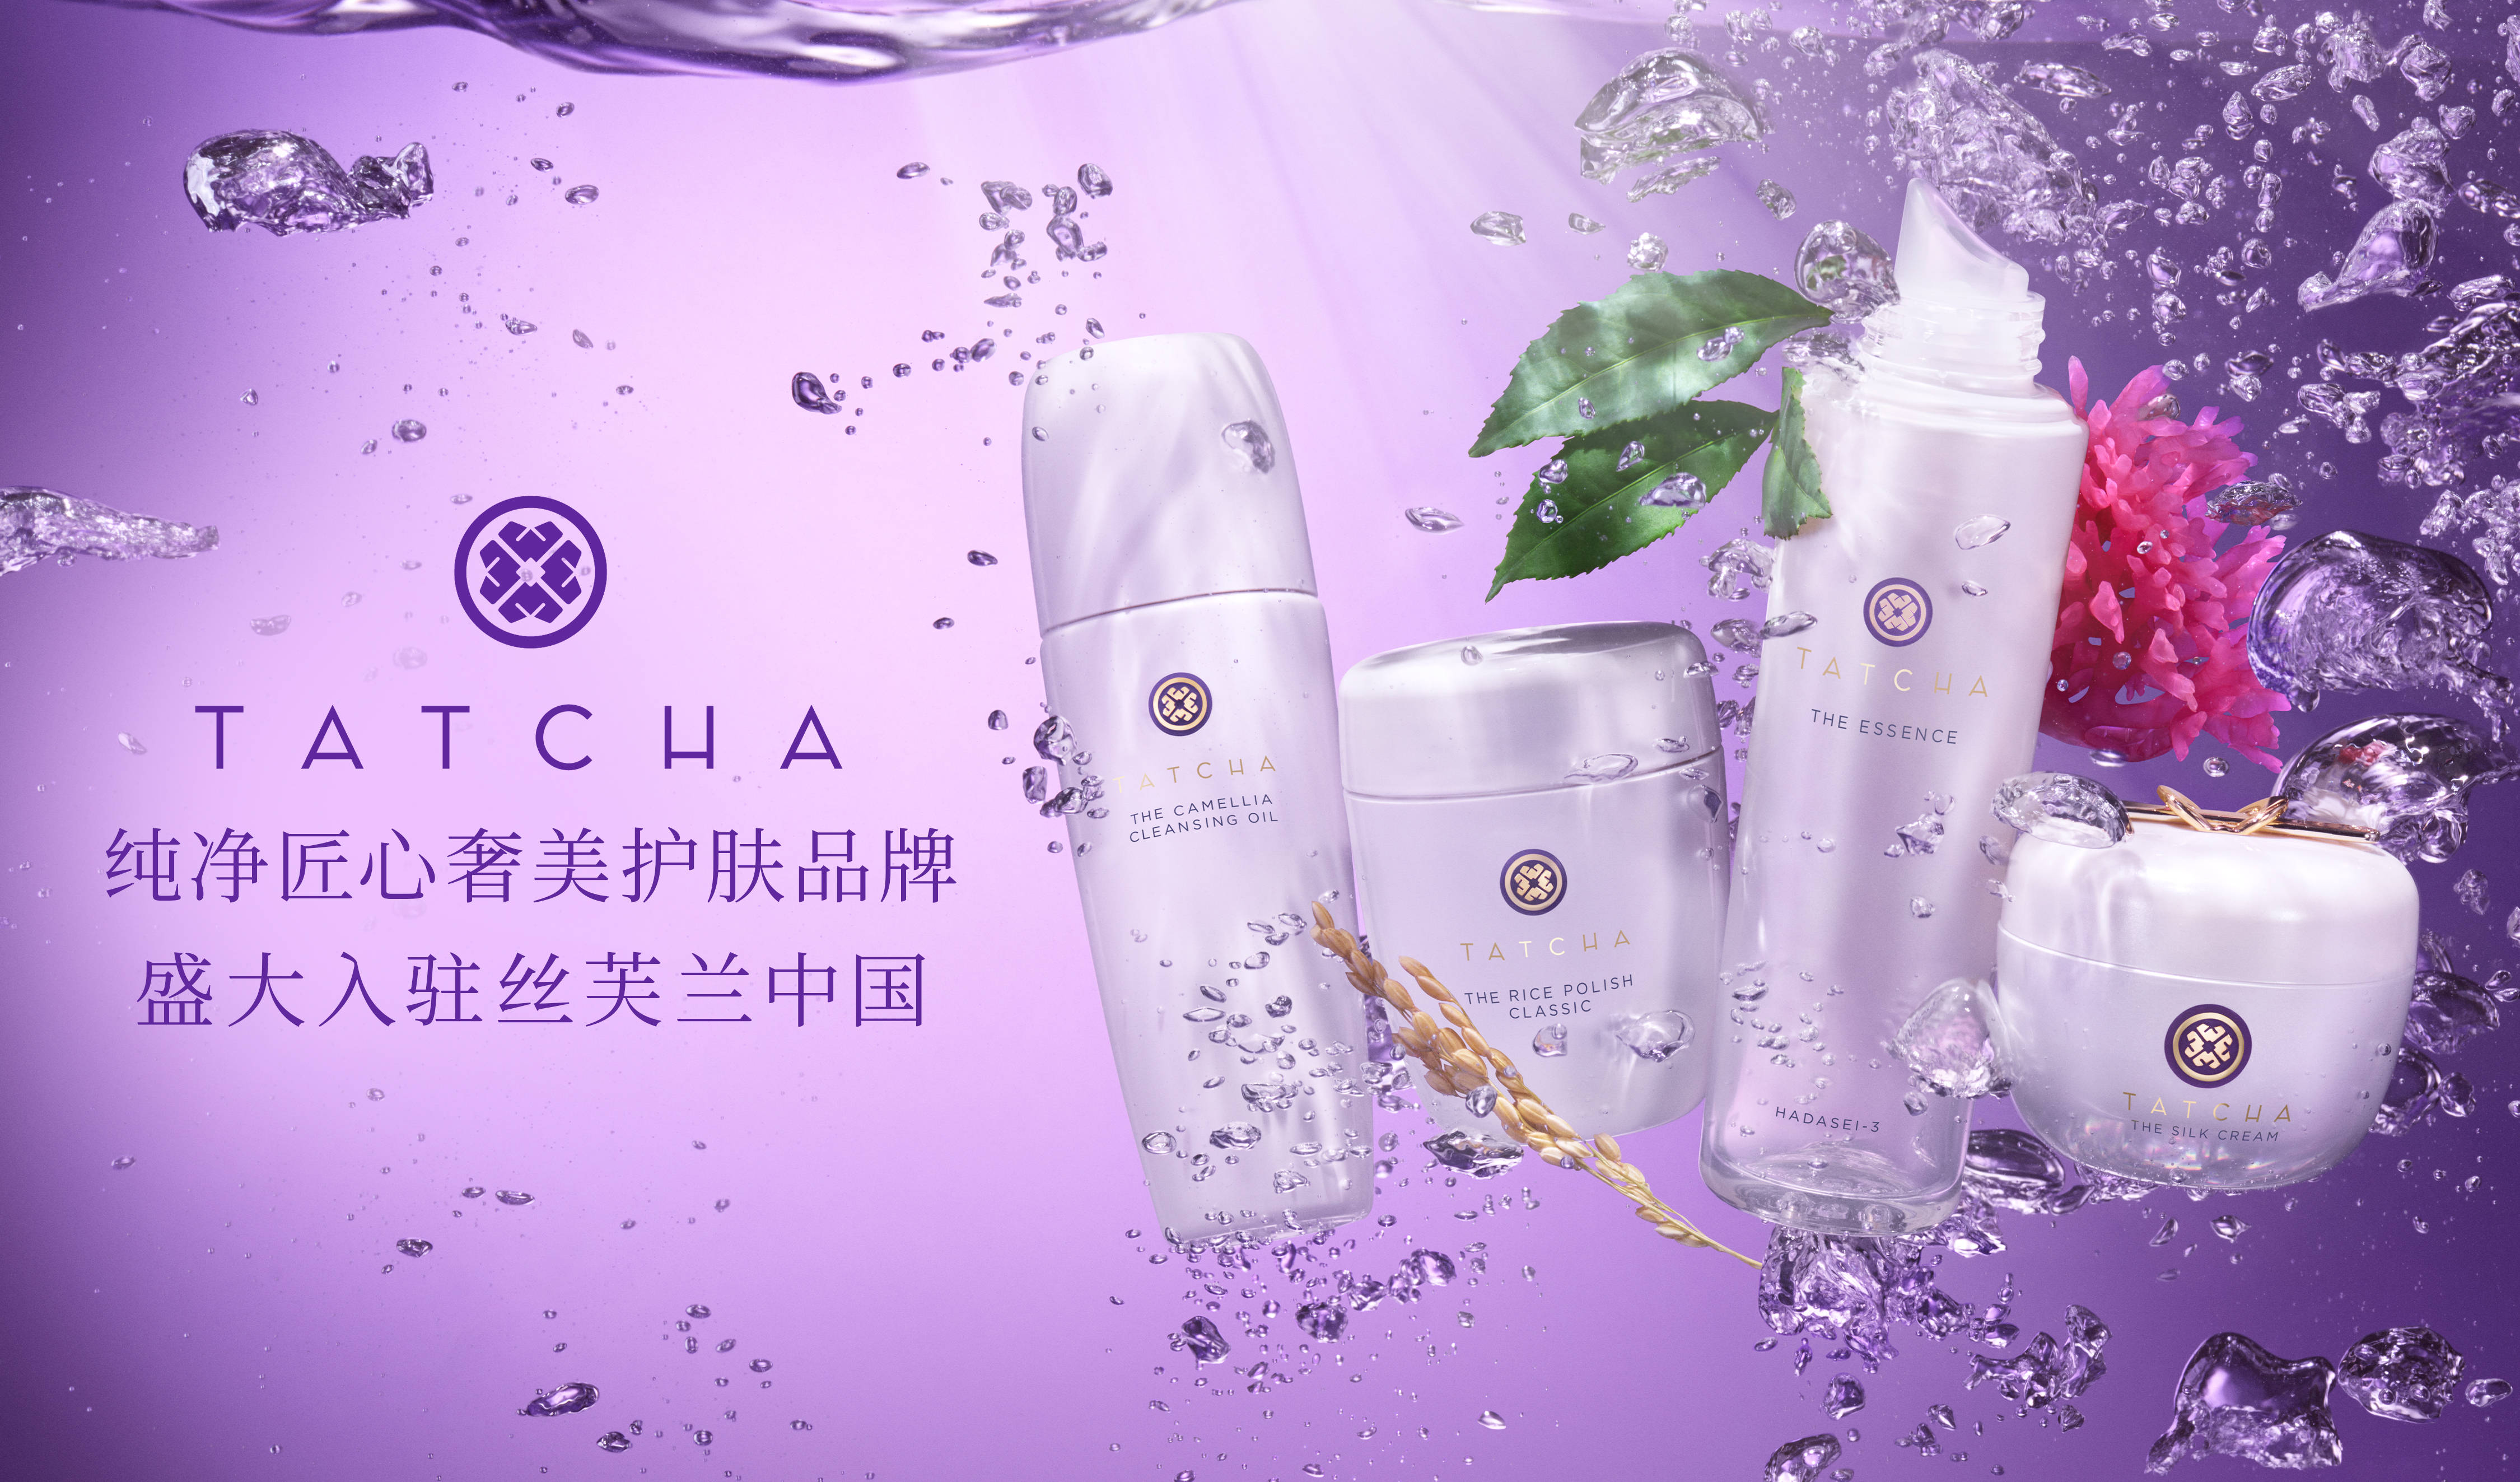 匠心纯净奢美护肤品牌TATCHA正式进驻中国市场图片1